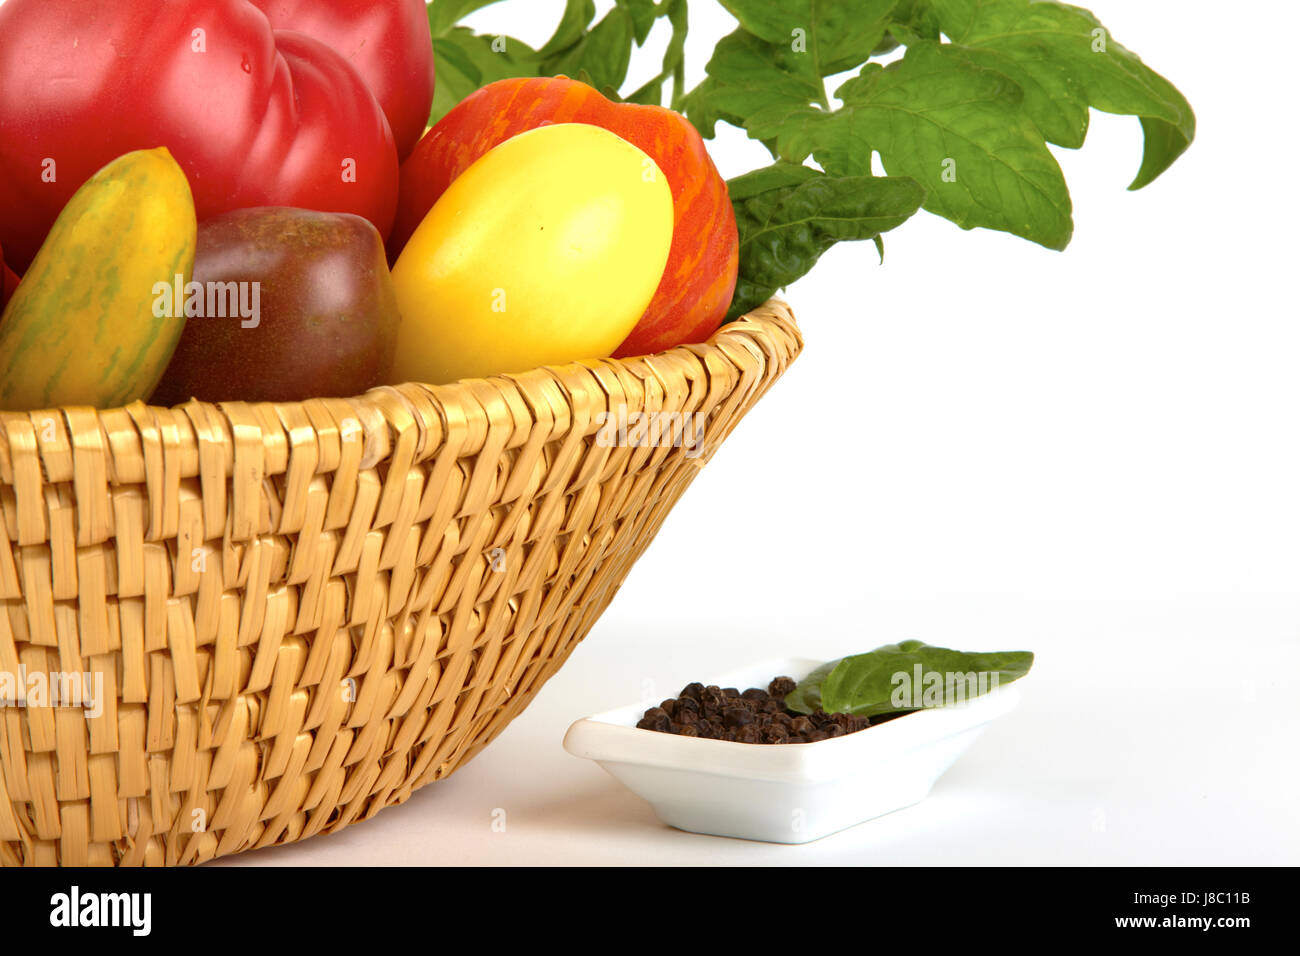 Cibo, aliment, eco, basket, ortaggi, pomodori, i pomodori, il raccolto, sano, Foto Stock